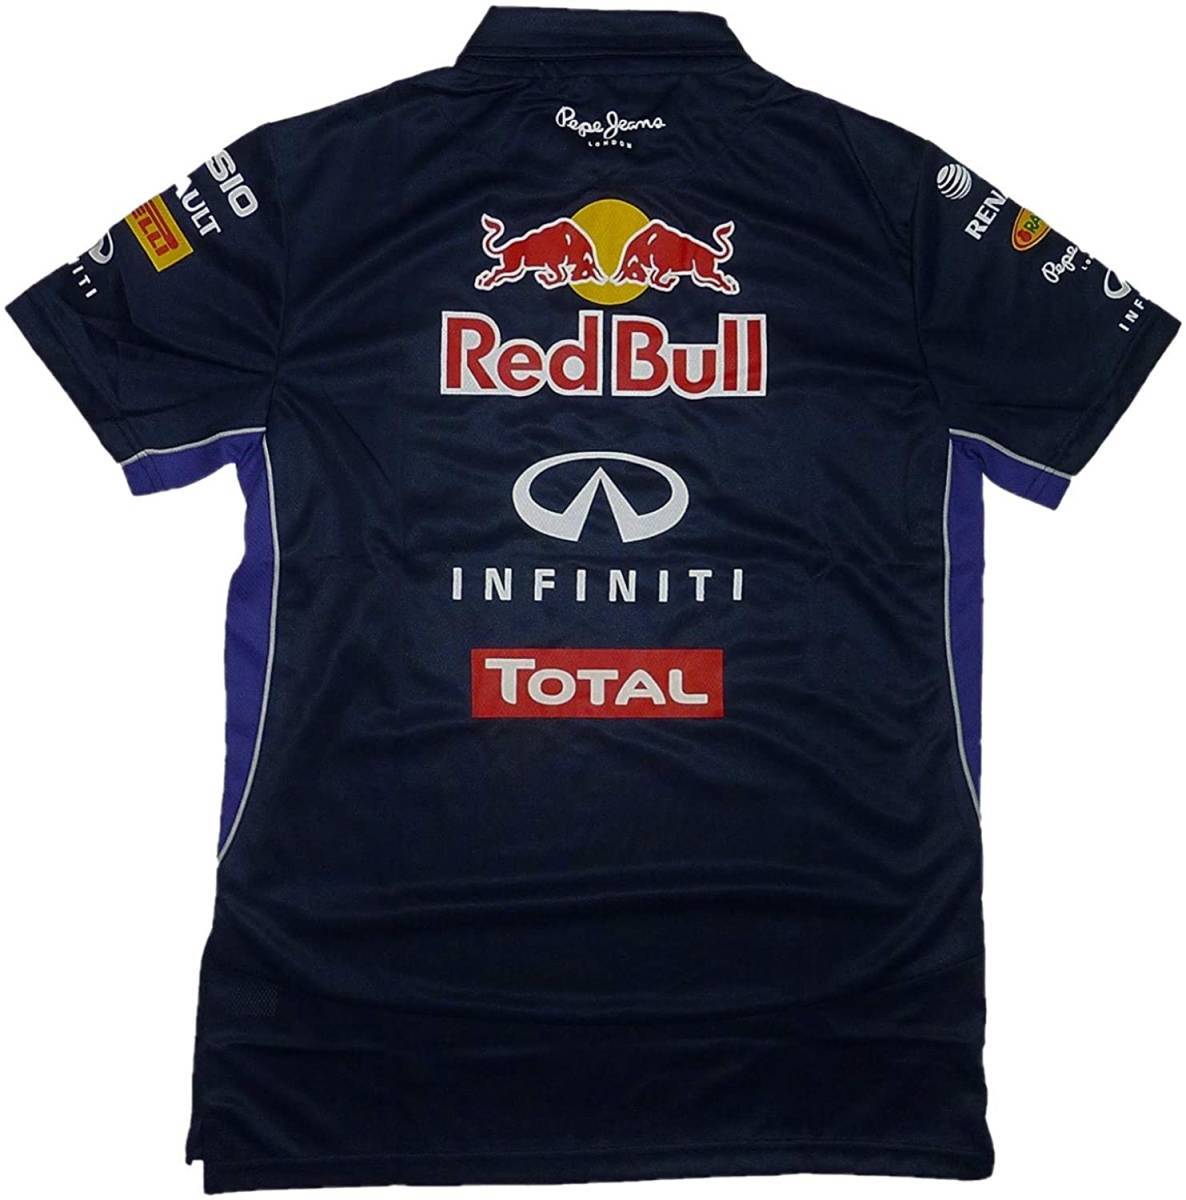 ペペジーンズ Pepe Jeans レッドブル Red Bull レーシング ハーフジップ OTL2014 ジッパー ポロシャツ（ネイビー）(XL)  [並行輸入品]